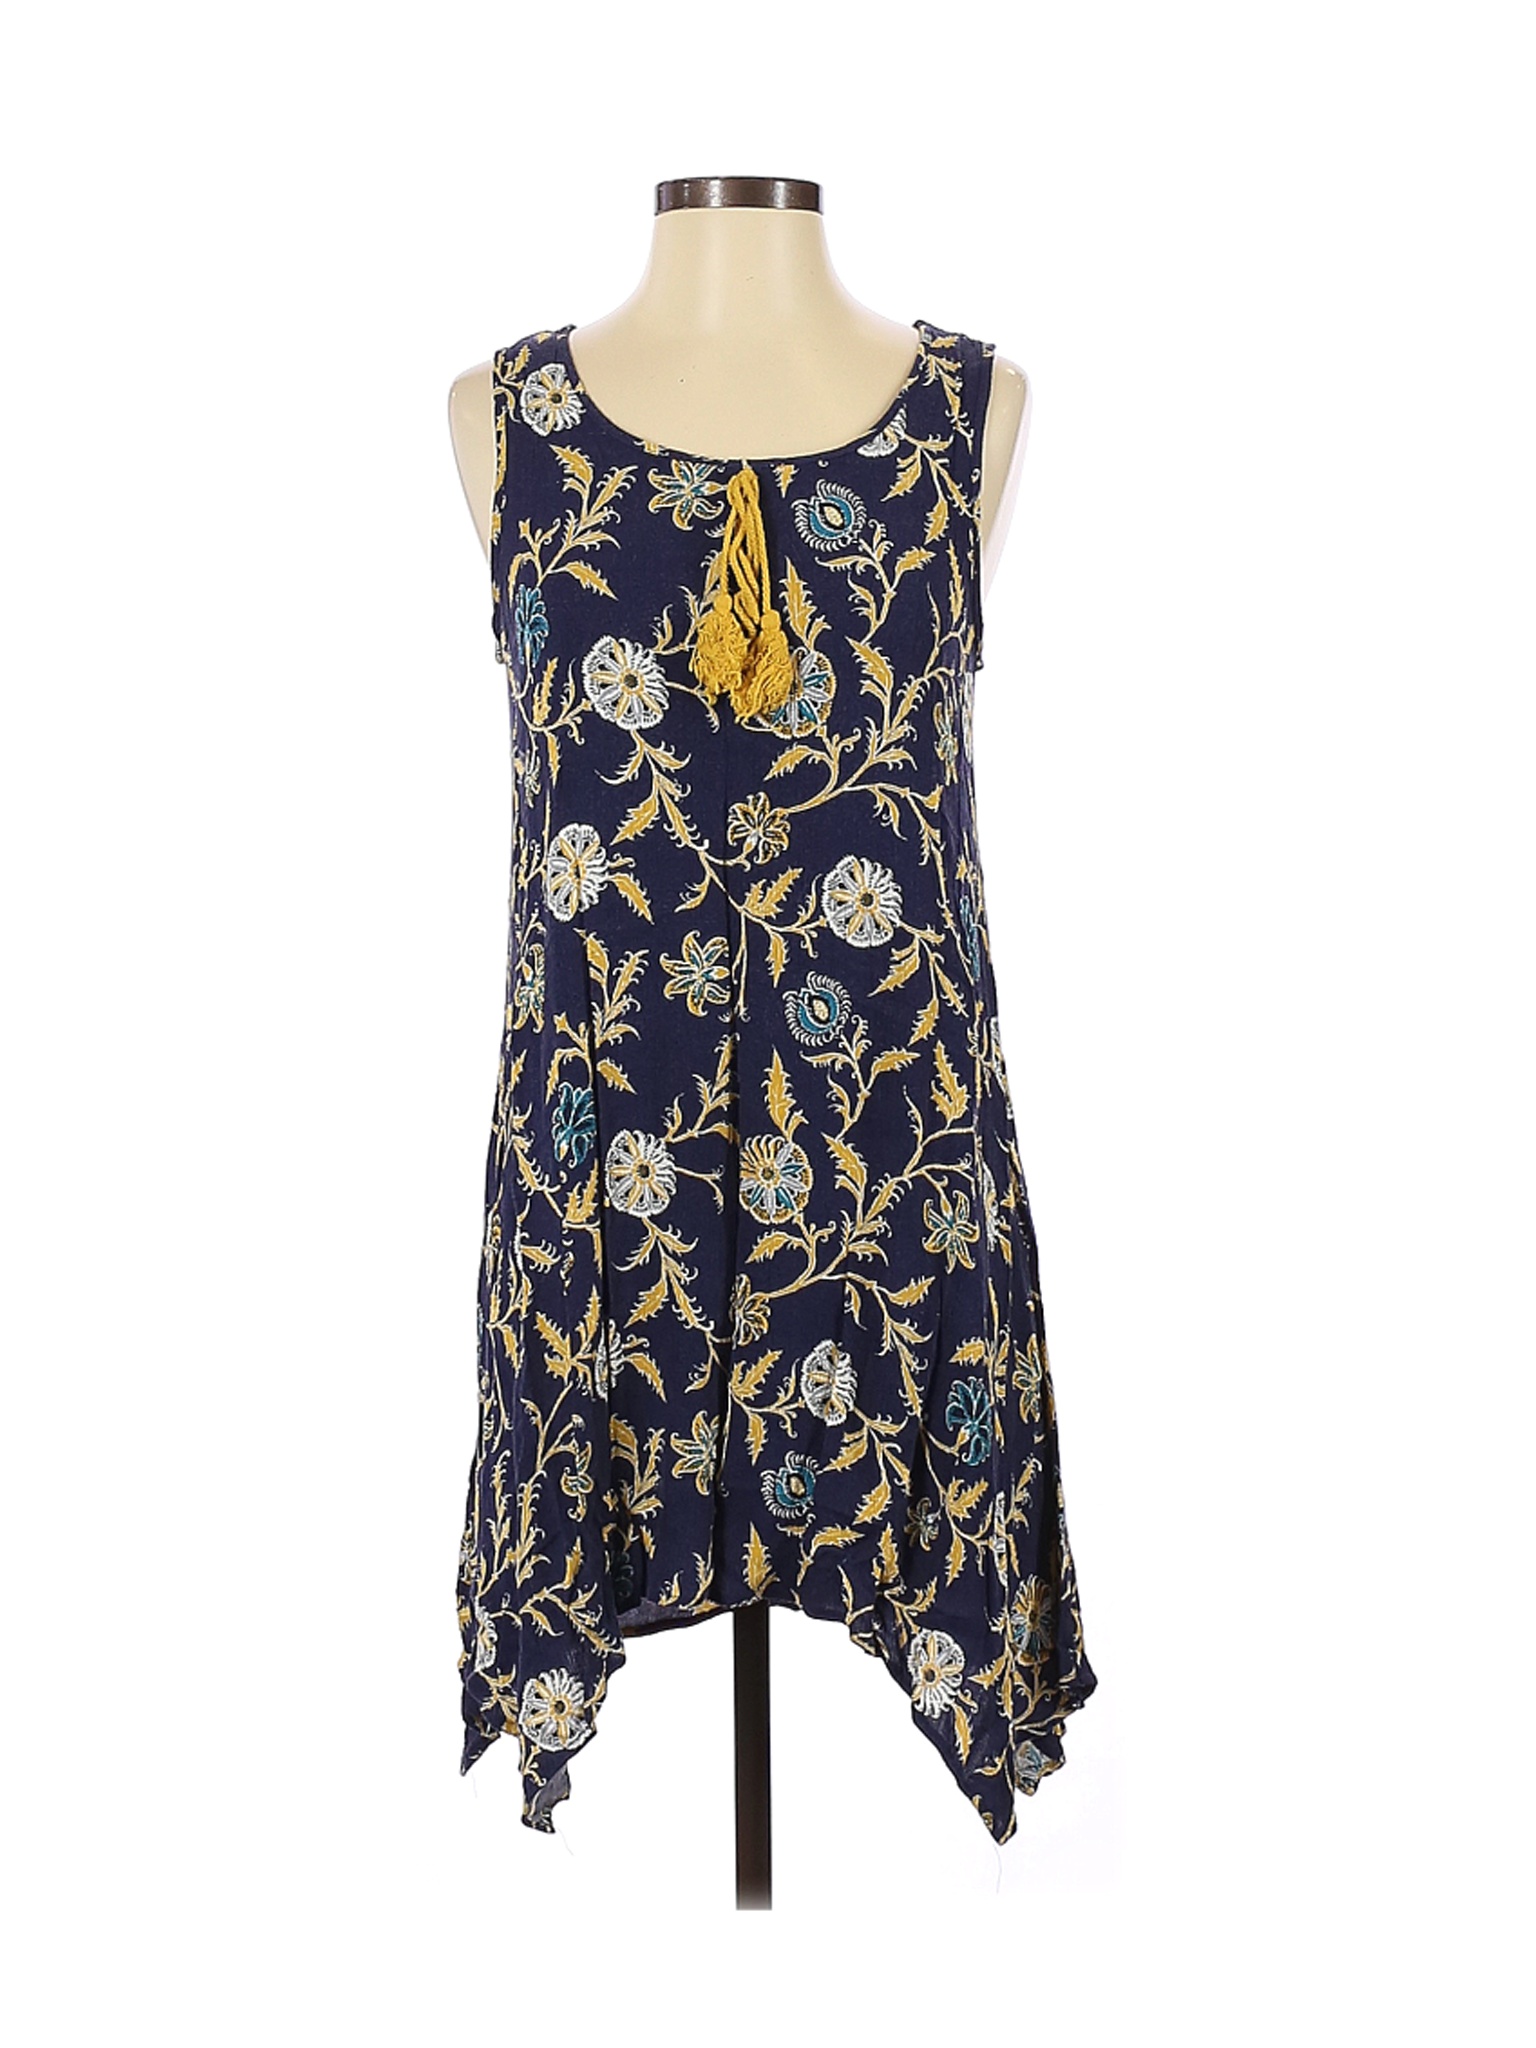 Naif Women Blue Casual Dress S Petites | eBay